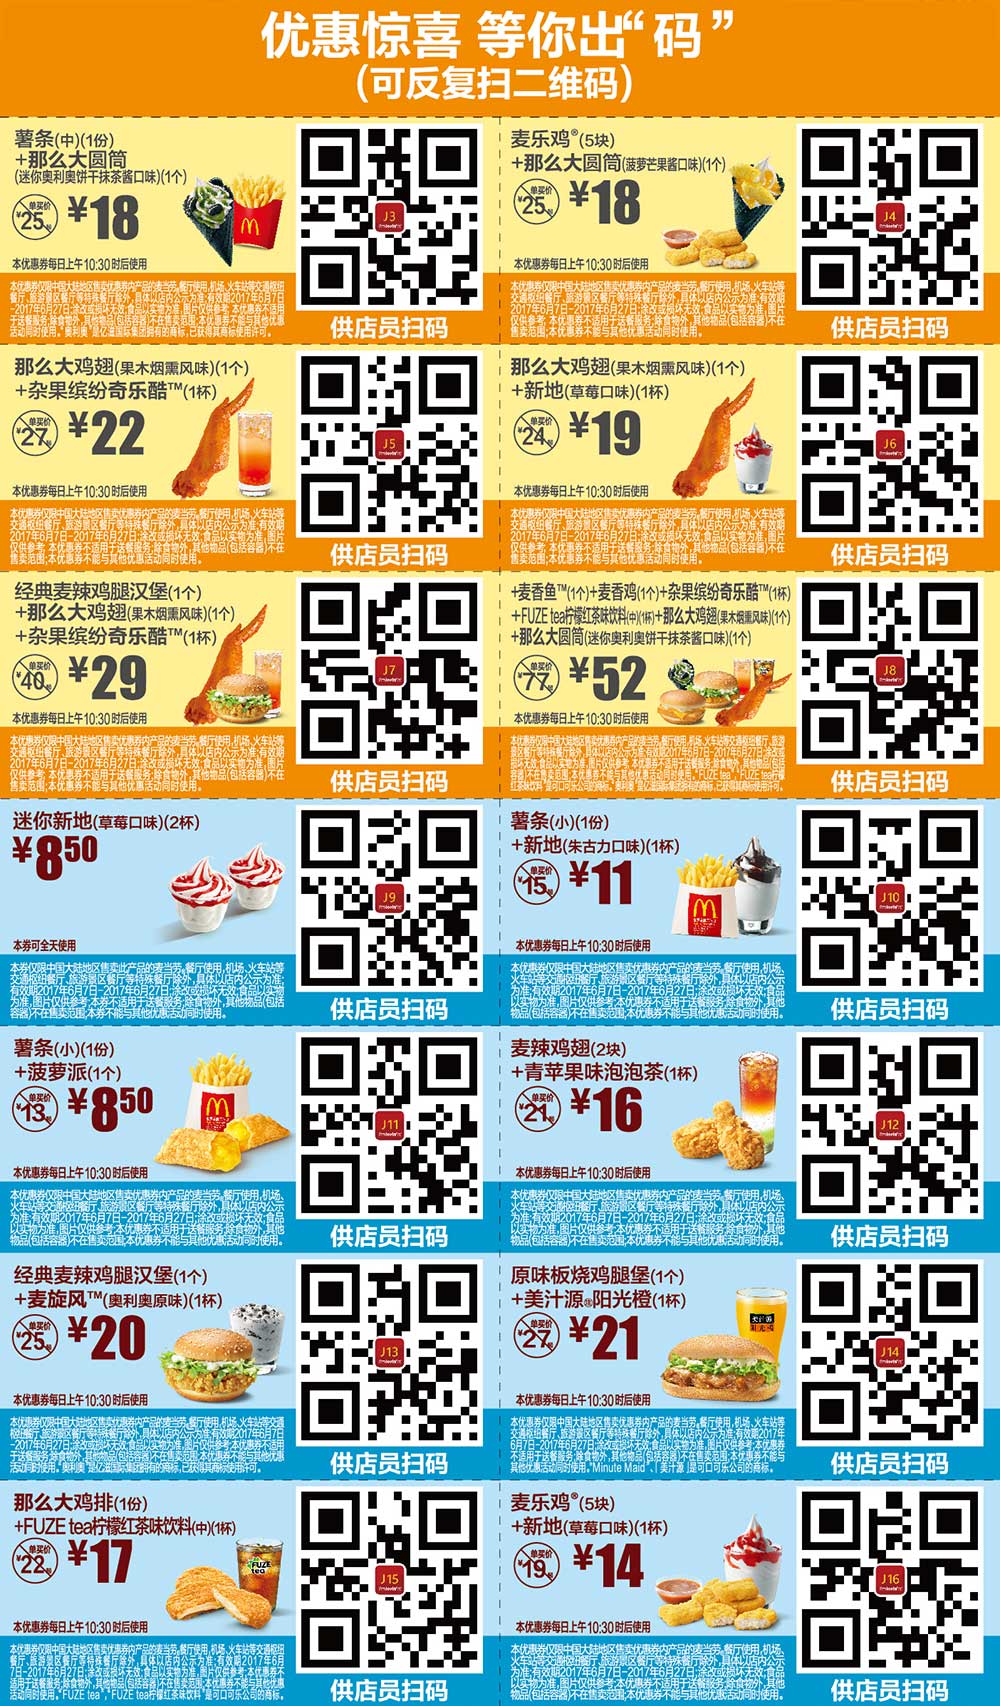 2017年6月份麦当劳优惠券手机版整张版本，点餐出示给店员扫码享优惠